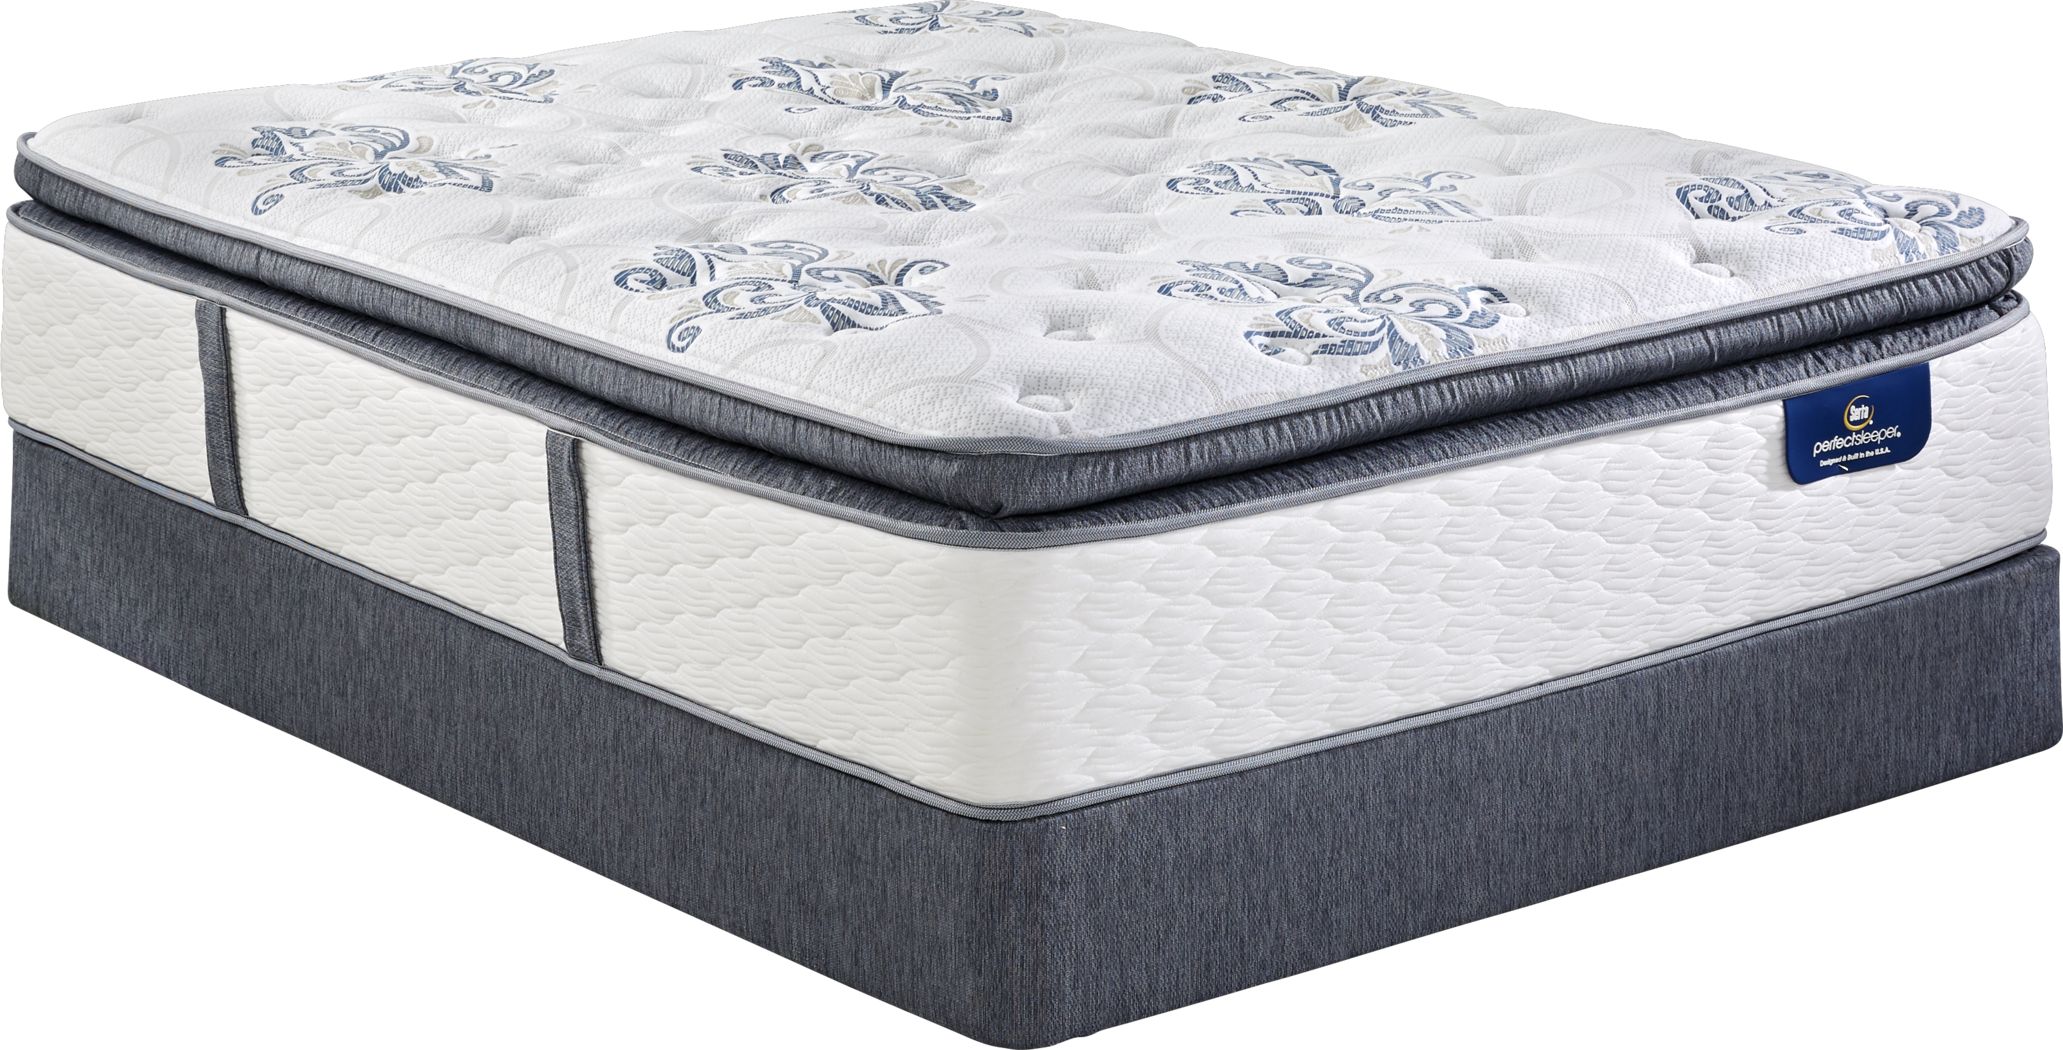 serta perfect night king size mattress